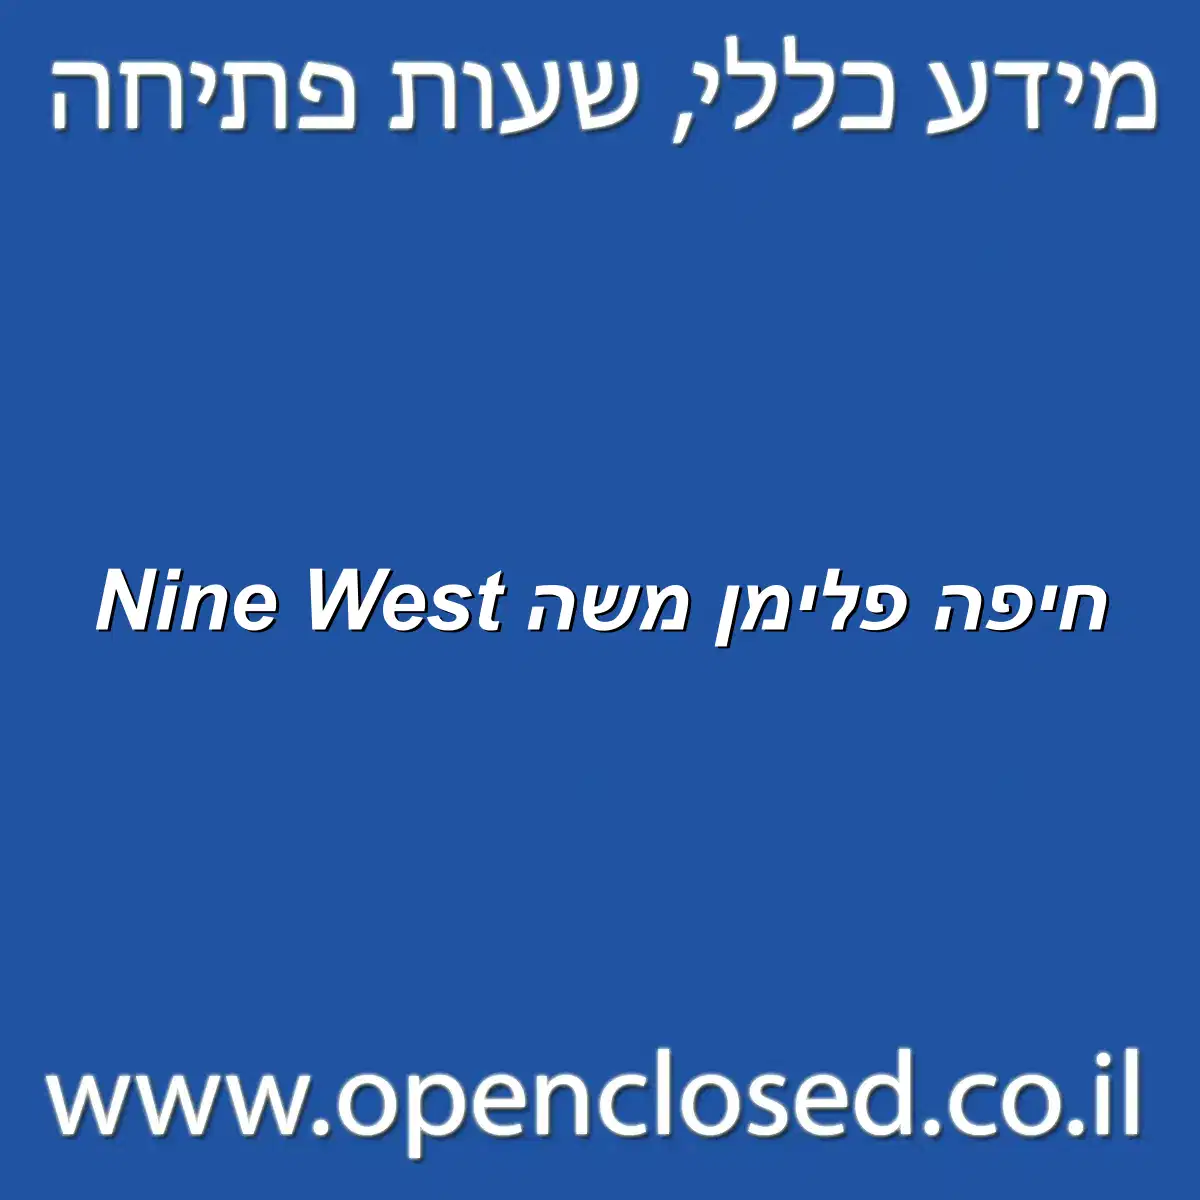 Nine West חיפה פלימן משה